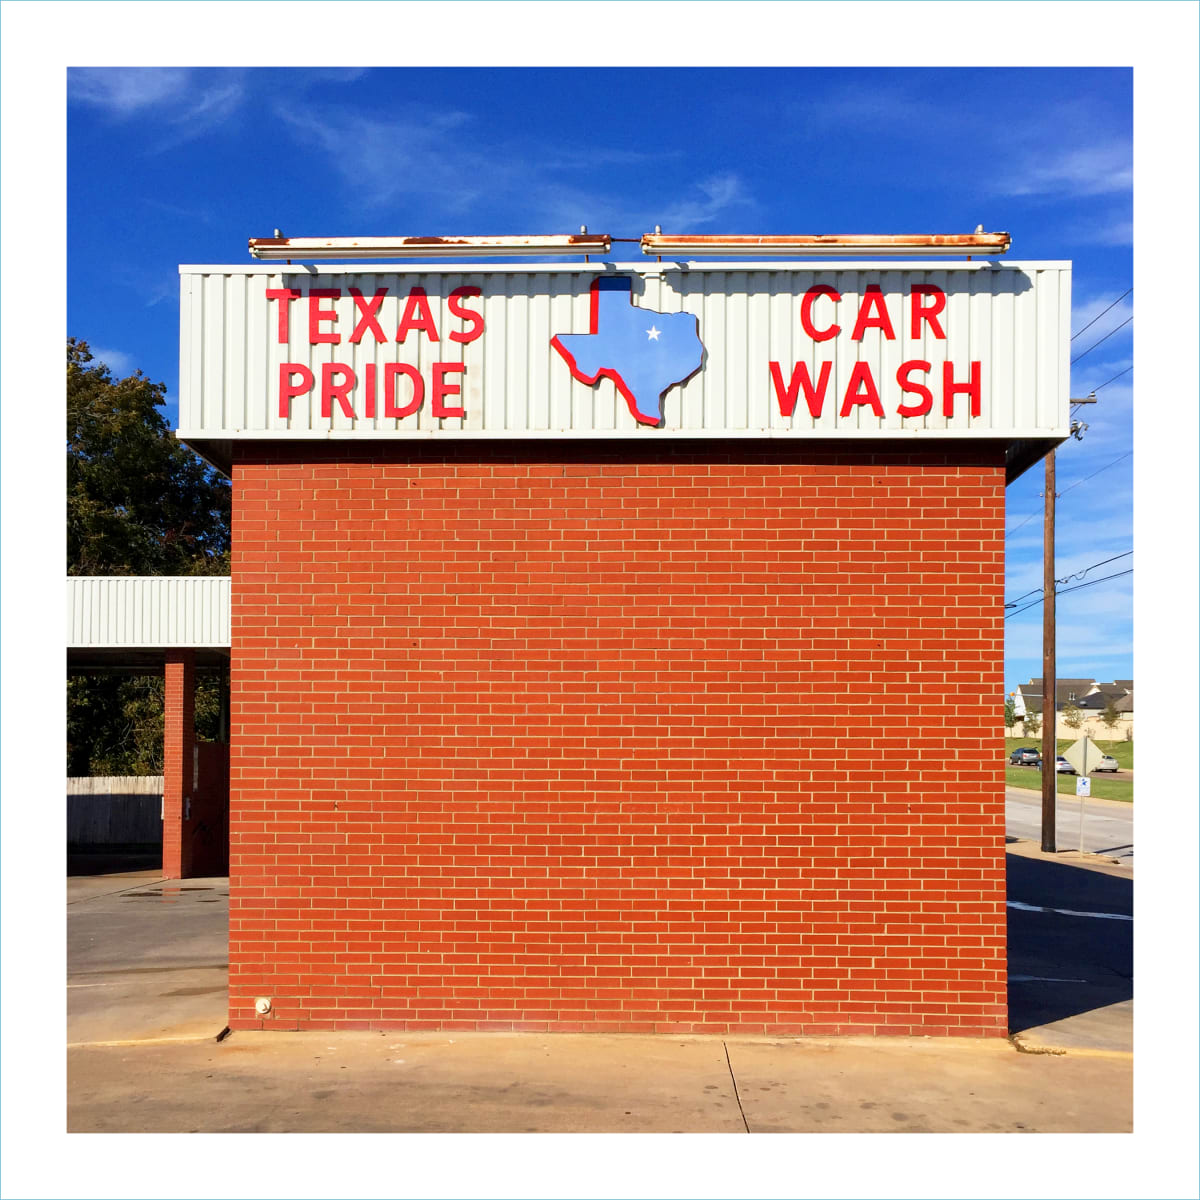 Texas Pride (Car Wash), Dallas TX, 2016